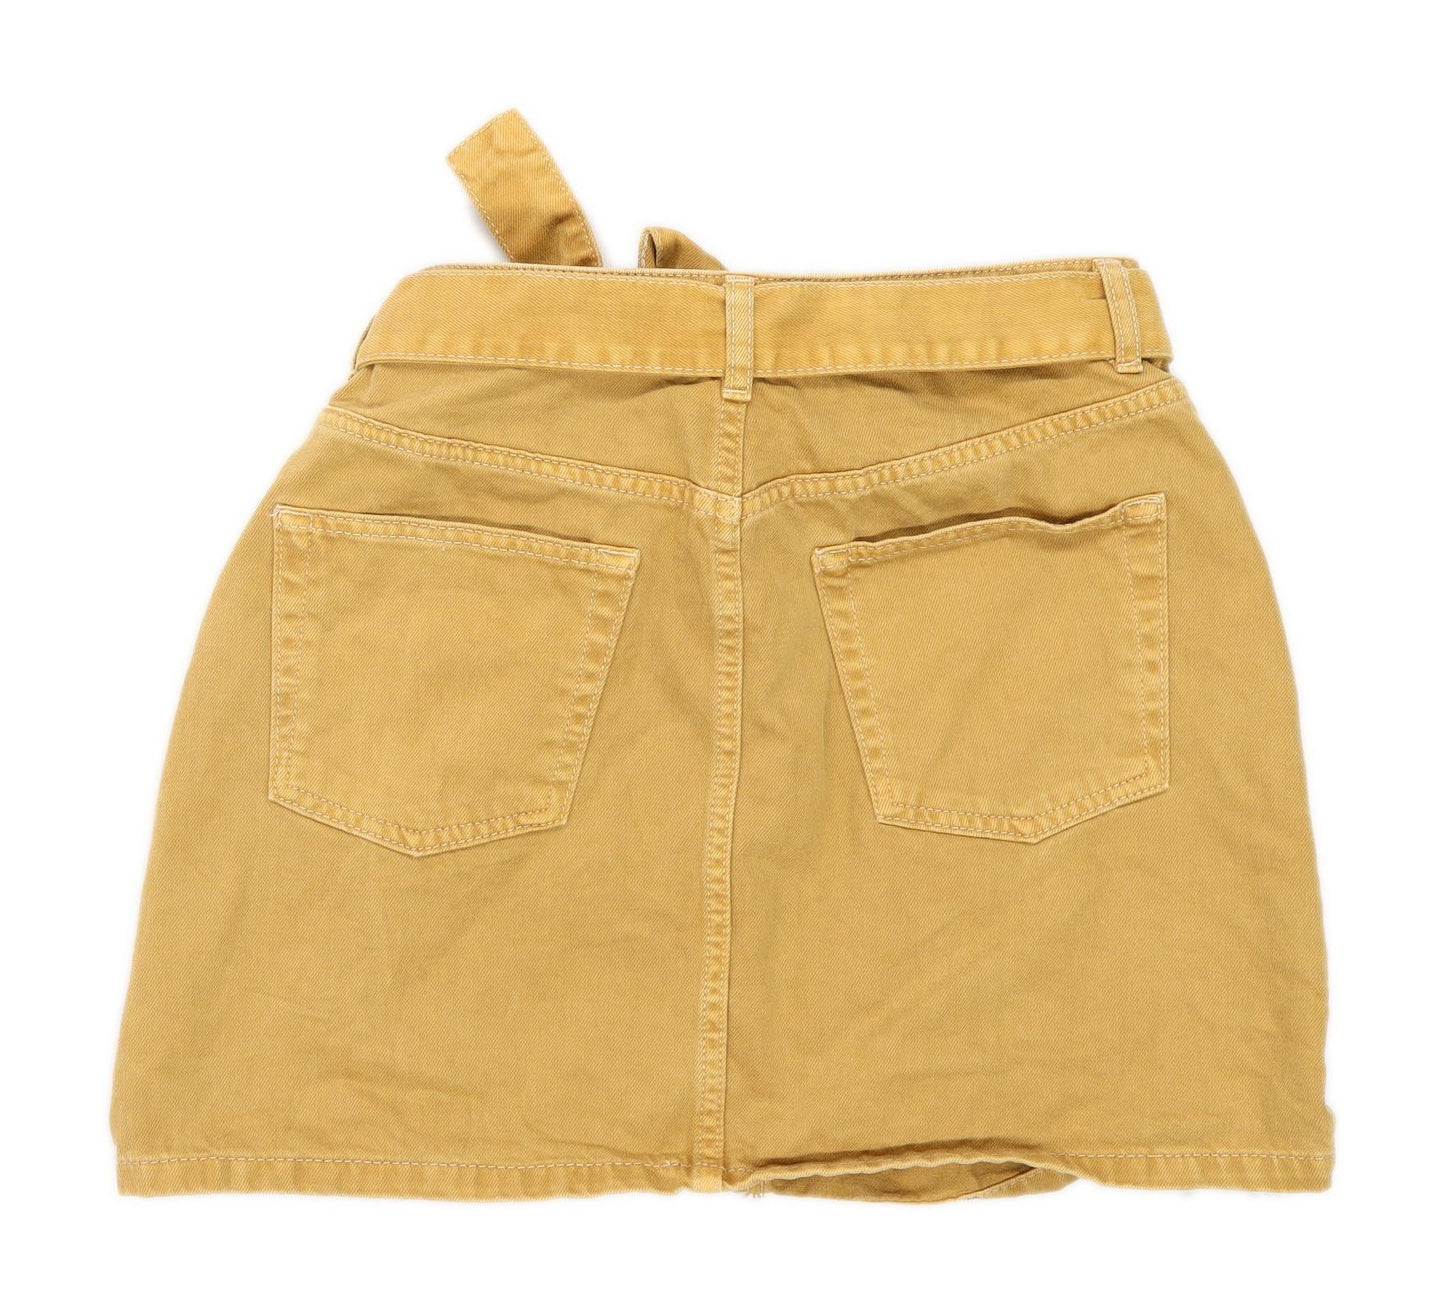 Denim Co Womens Size 12 Denim Yellow A-Line Skirt (Regular)